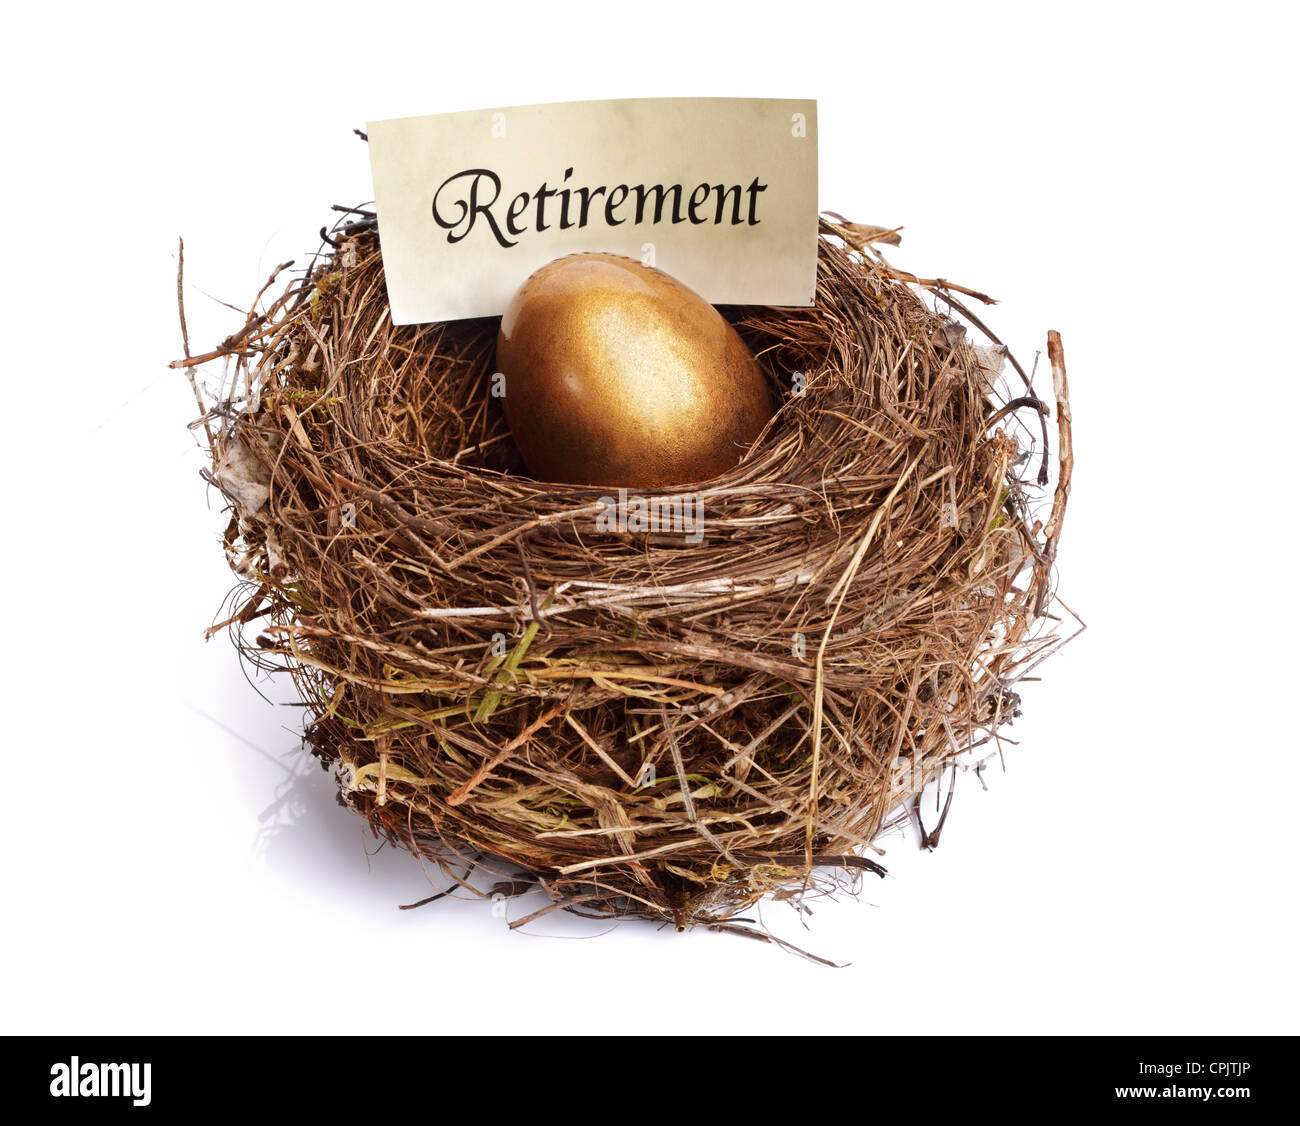 Retirement savings golden nest egg Stock Photo